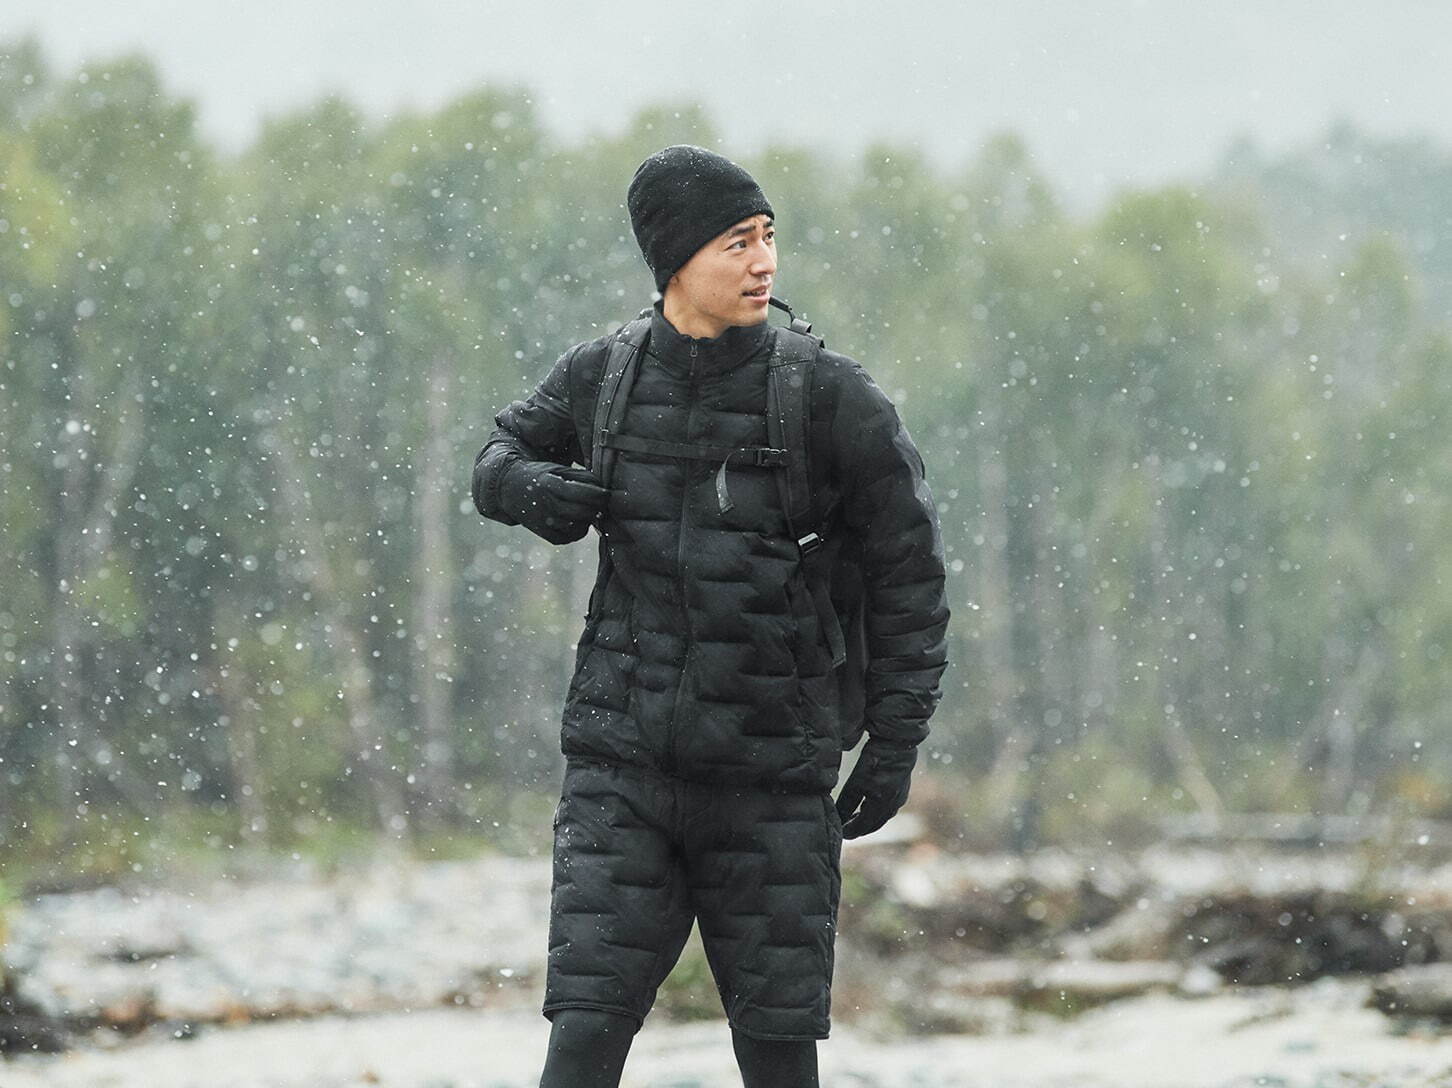 ユニクロ高機能ウェア新作「+S」 - 冬のスポーツに対応するジャケット